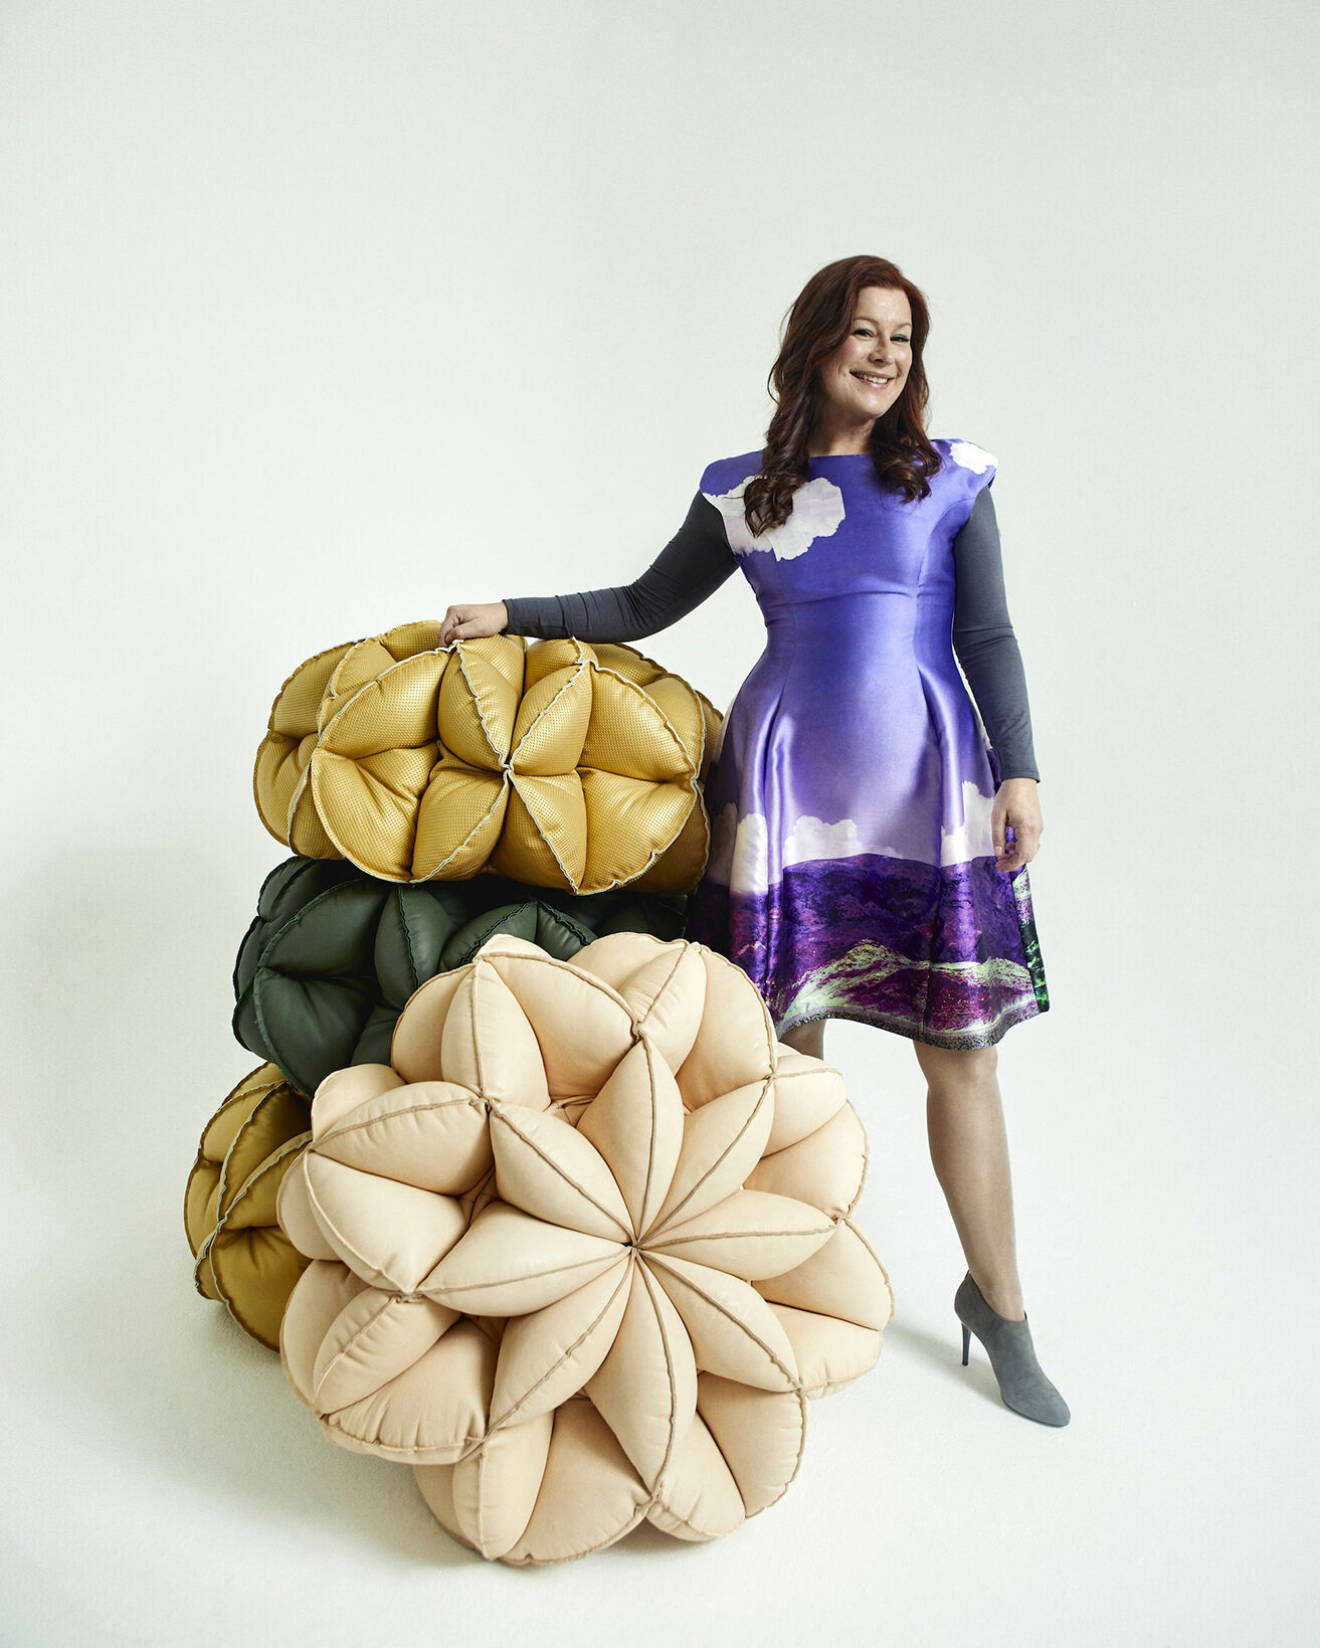 Lisa Hilland är designer och tillsammans med Gemla lanserade hon ett projekt med fokus på upcycling av läderspill på möbel- mässan i Milano